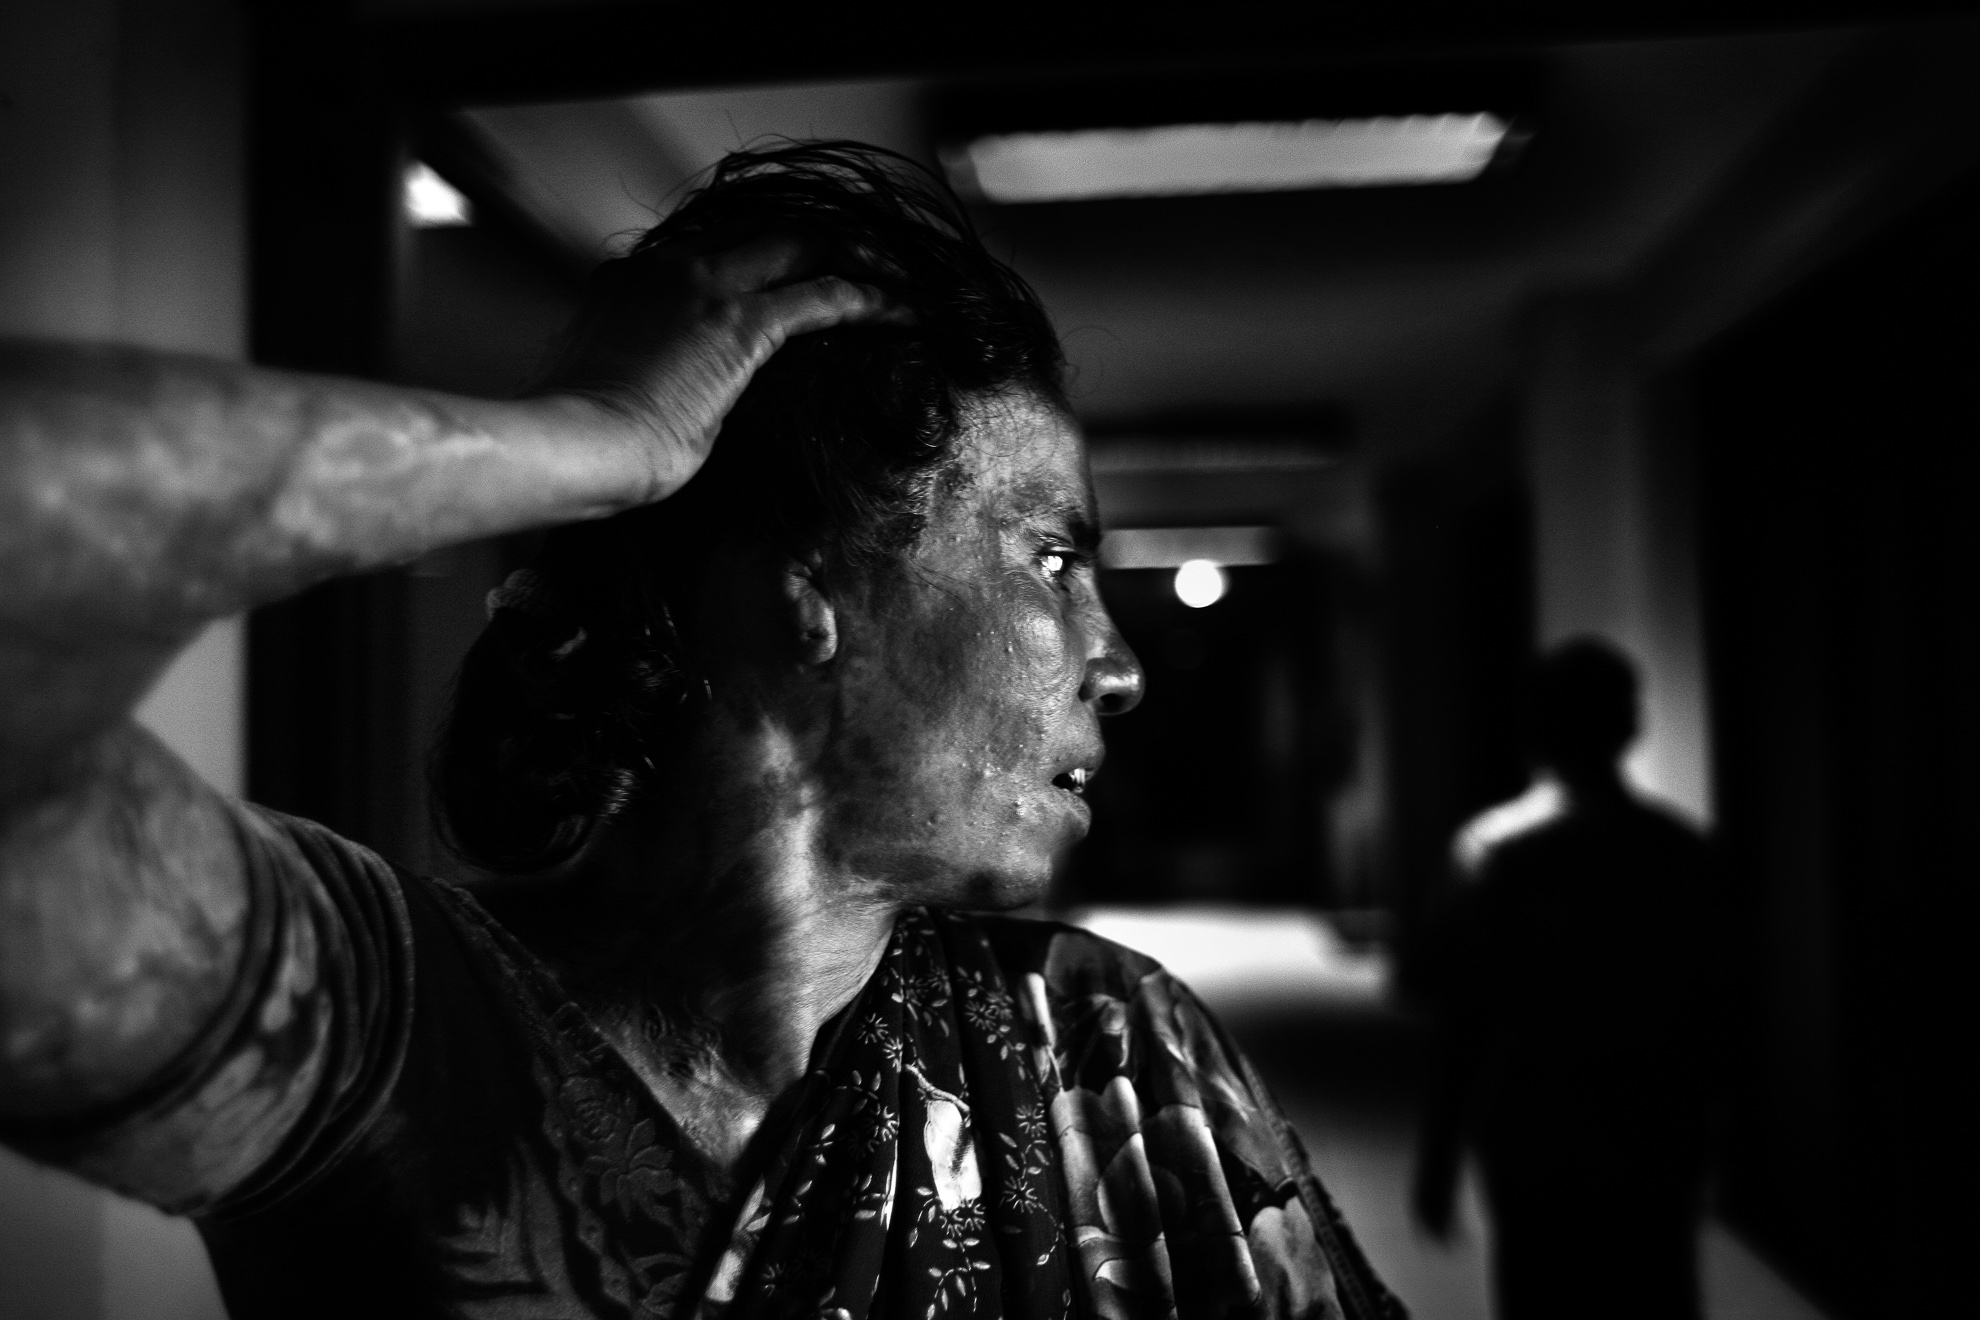 Rita Rani Das enseña las cicatrices en su rostro y cuello. Fue atacada por su primer marido después de haberse convertido al Islam y haberse unido en segundas nupcias con un musulmán, en abril de 2007.